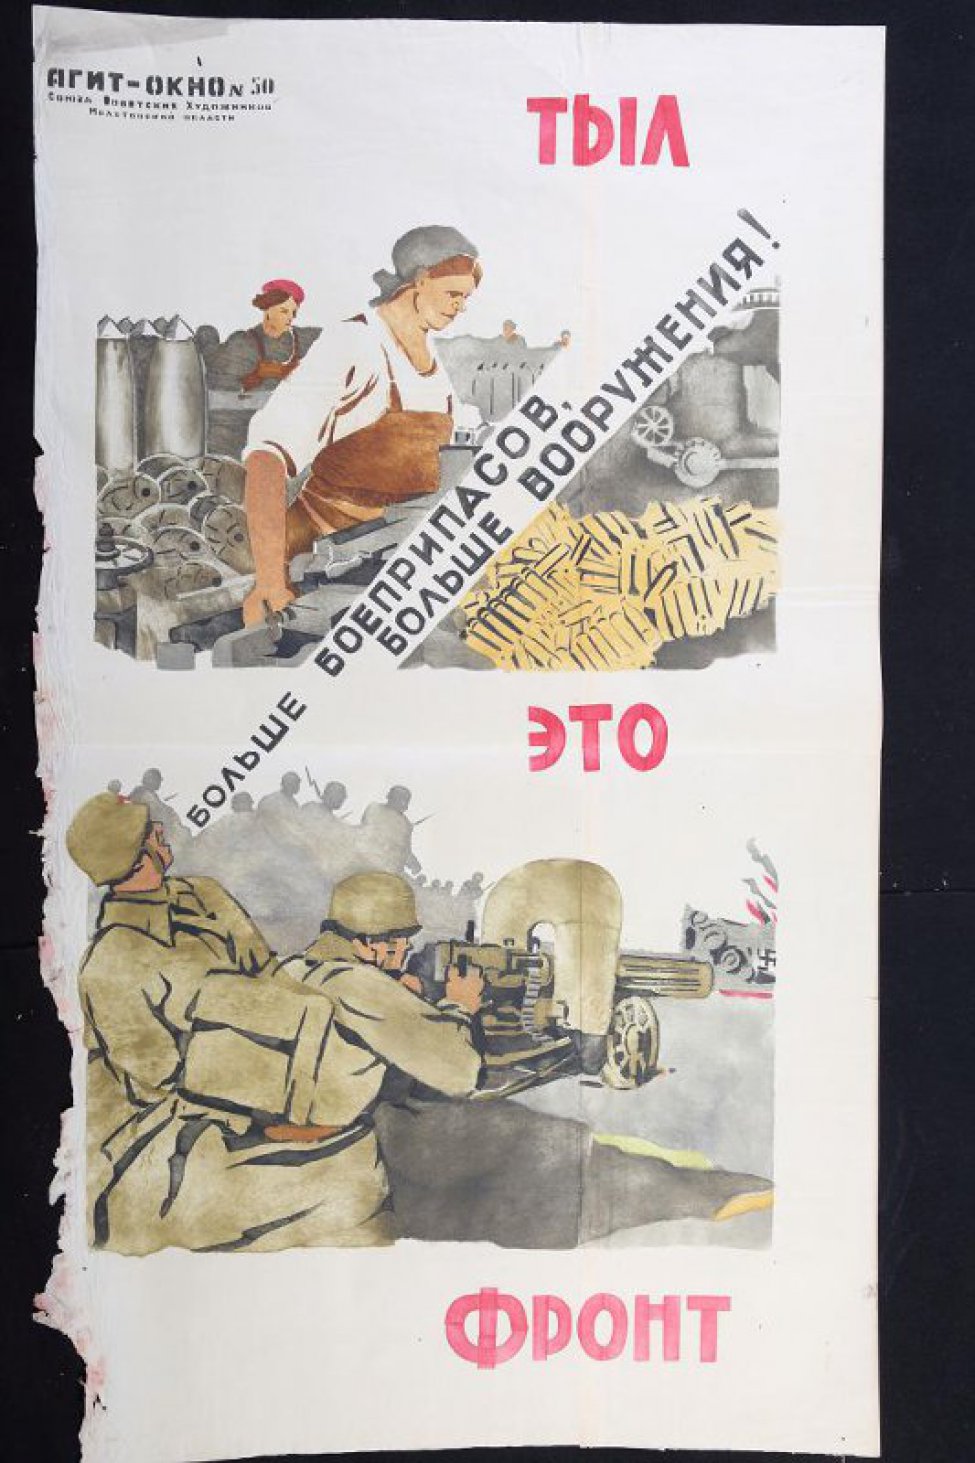 Помещено 2 рисунка: 1) женщина у станка, рядом груда патронов, надпись: "Больше боеприпасов, больше вооружения!"; 2) два бойца у пулемета.